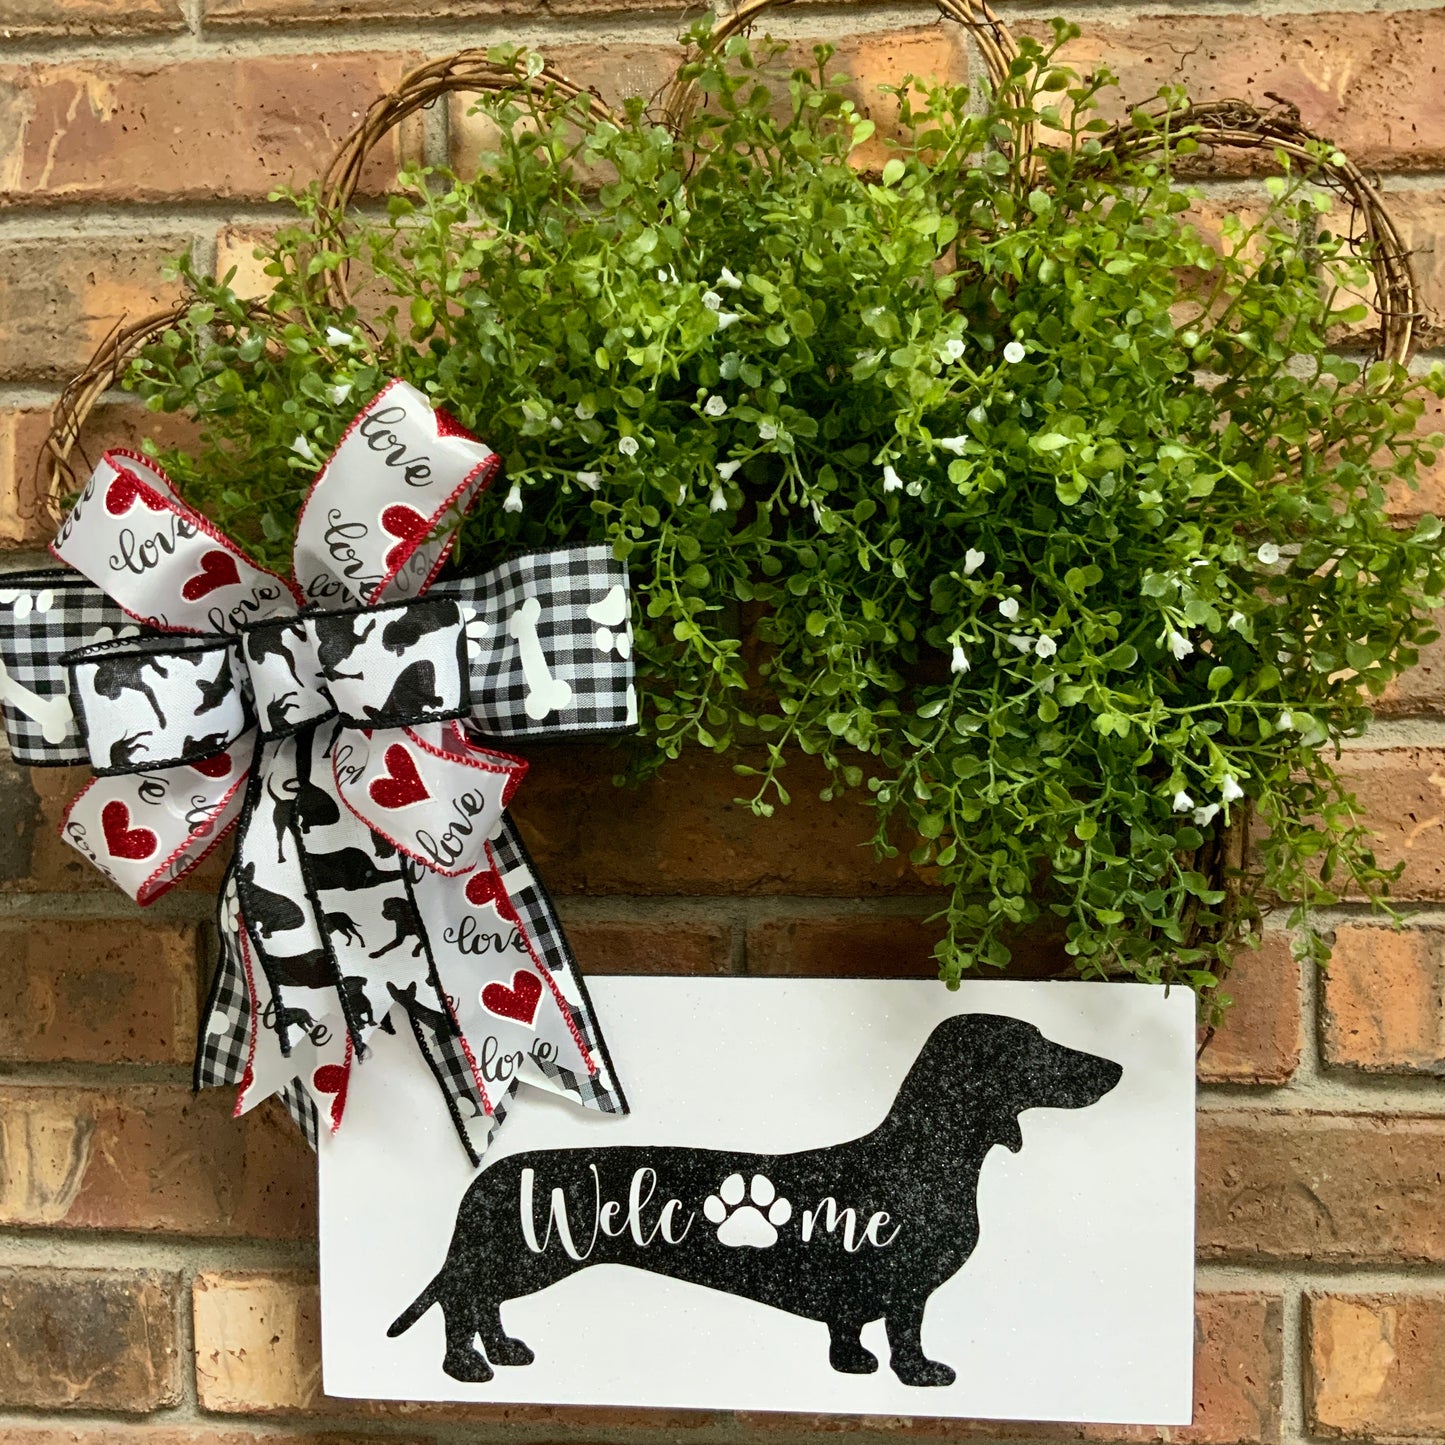 Dachshund Wreath, Dachshund Door Hanger, Dachshund Dog Wreath, Dachshund Welcome Wreath, Dog Grapevine Wreath, Dog Paw Print Door Hanger